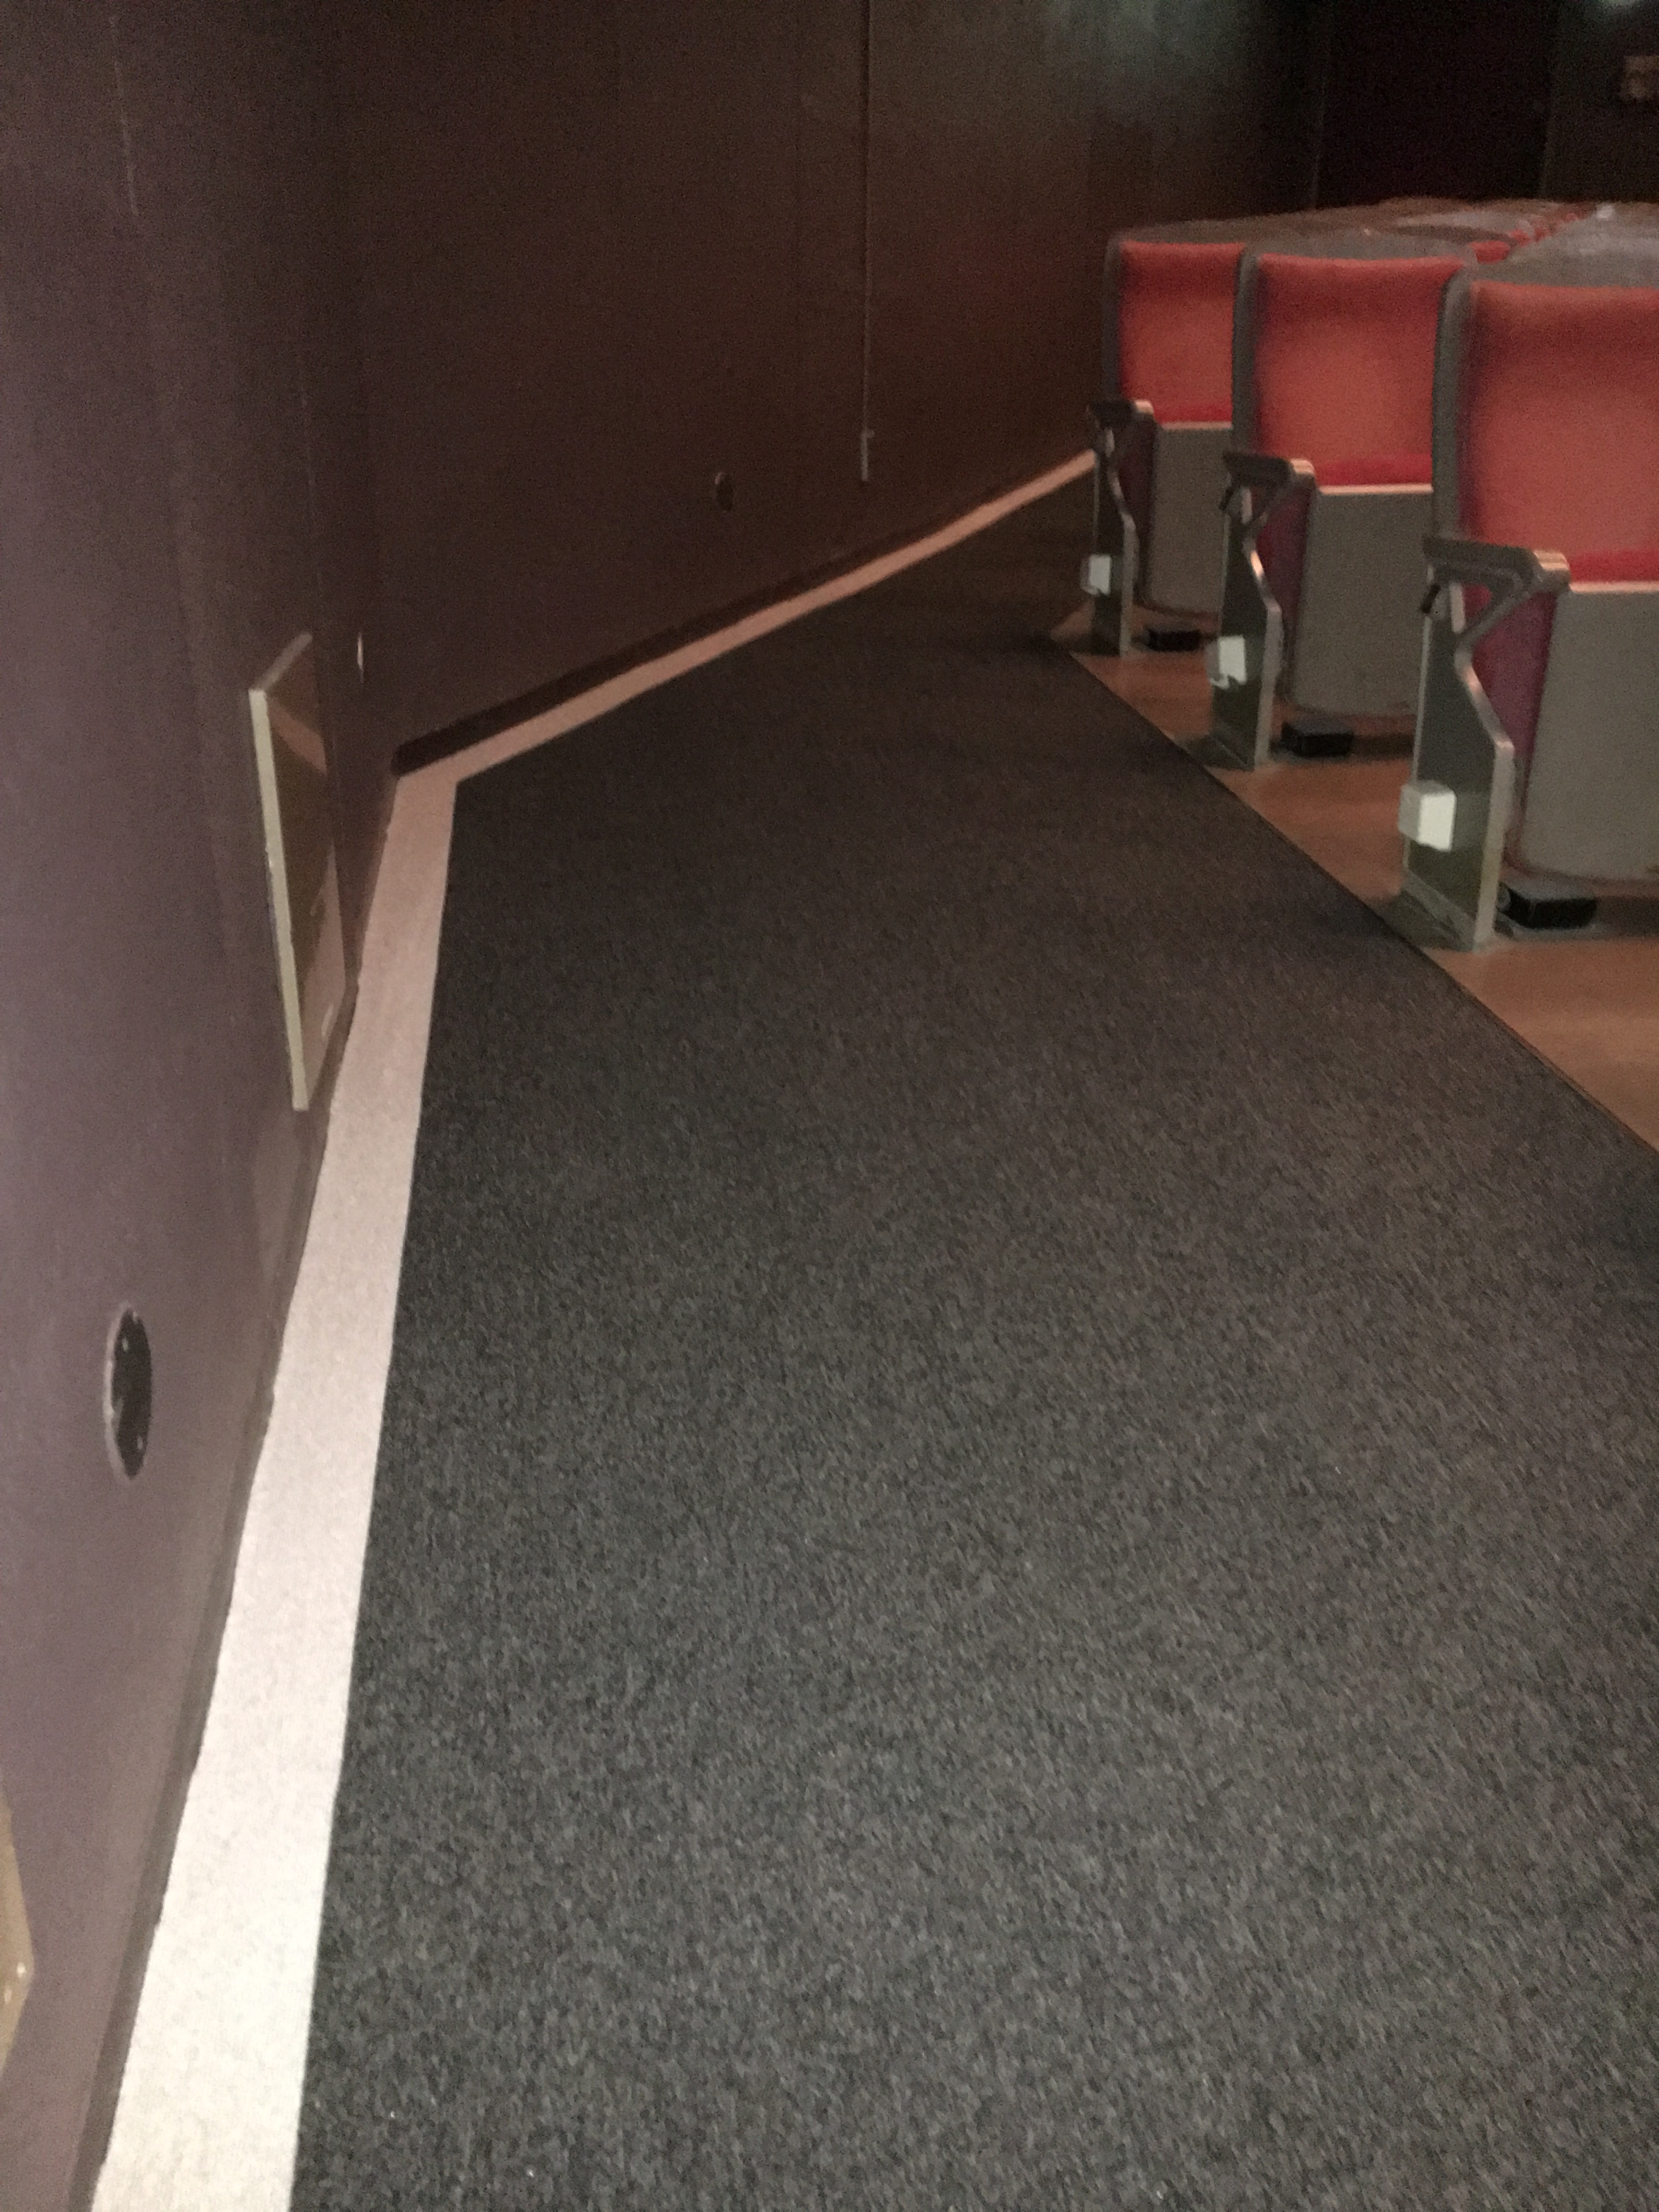 薄暗い客席内の床と壁の境目に太くて白い線が引いてある